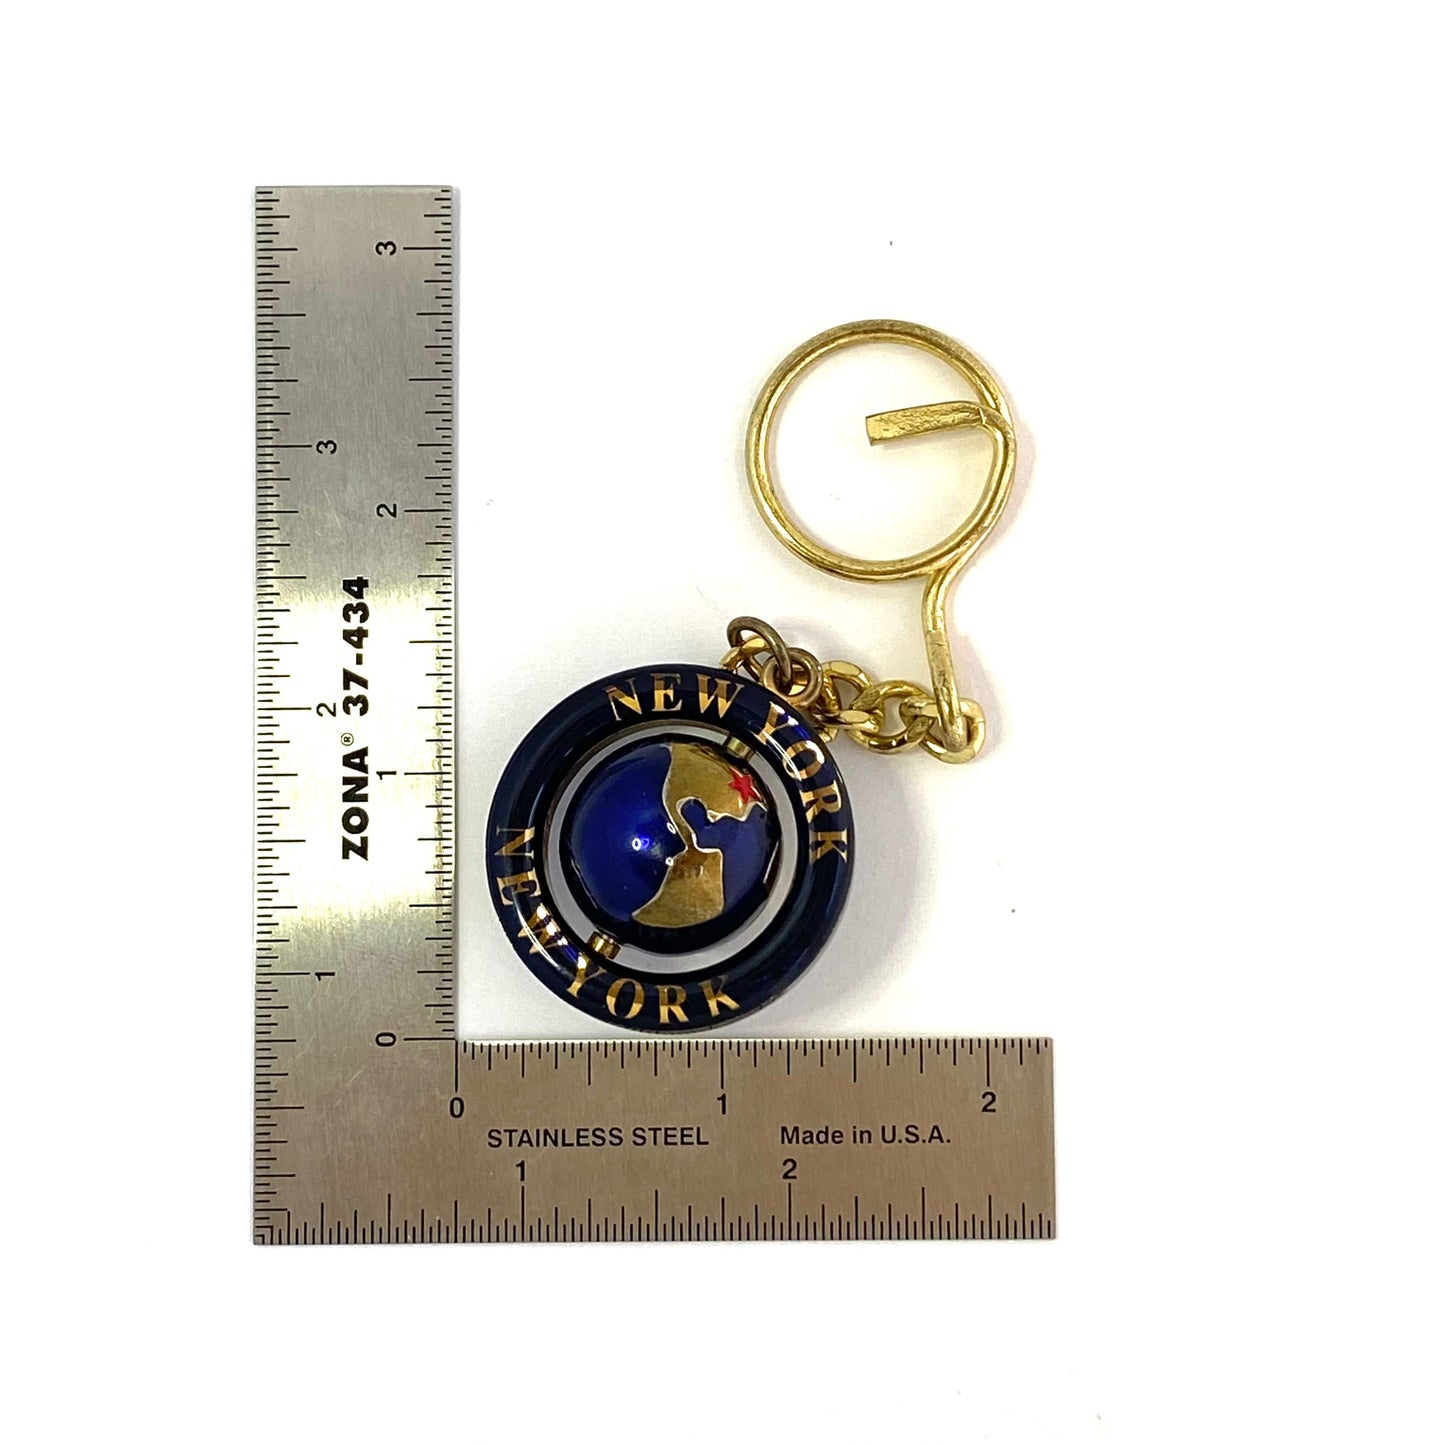 “New York” Goldtone Spinner Globe Travel Souvenir Keychain Key Ring Charm